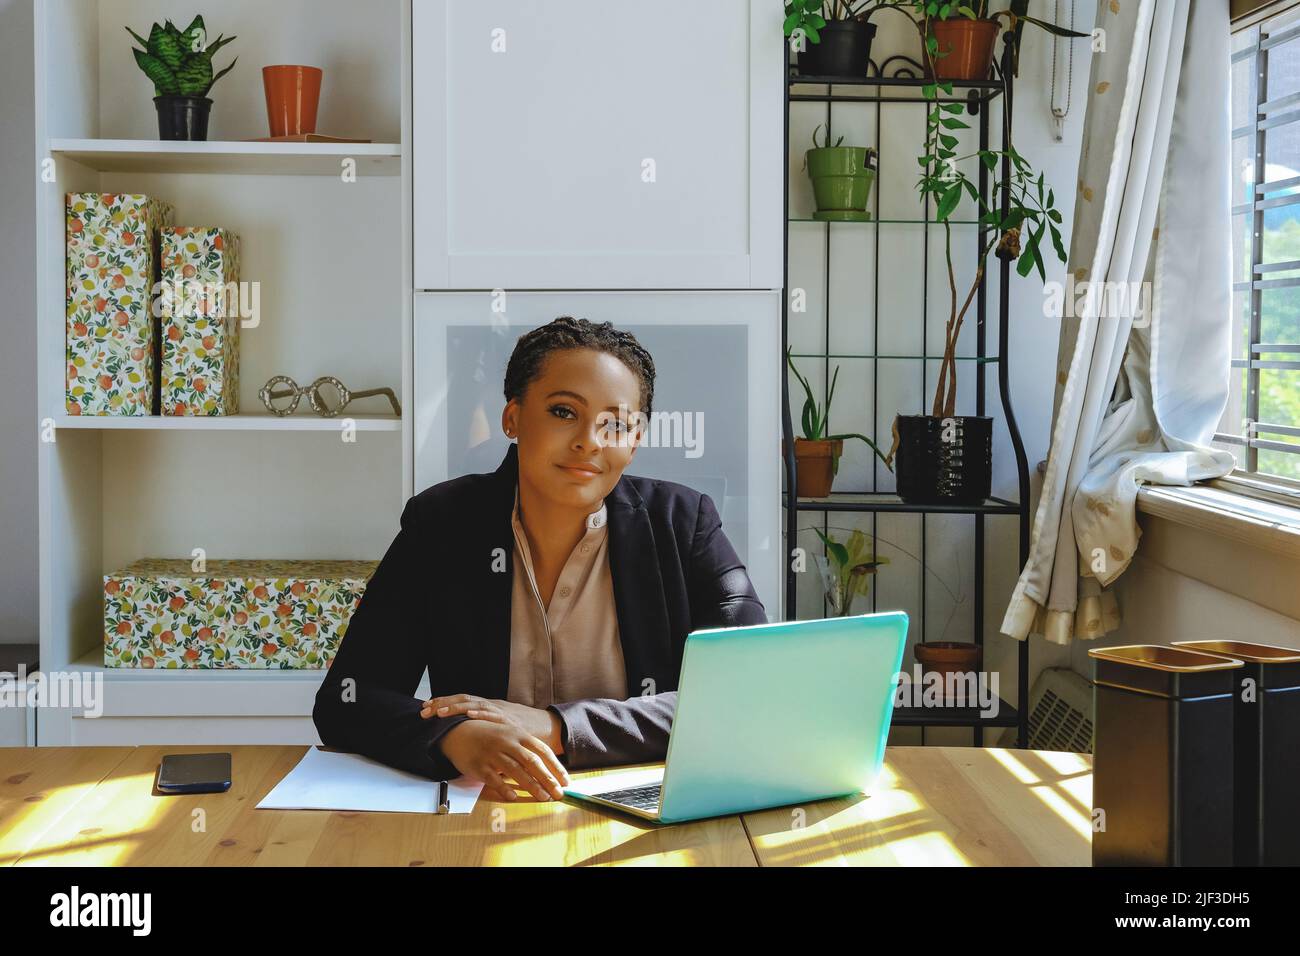 Jeune entrepreneur adulte indépendant femme noire propriétaire de petite entreprise avec ordinateur portable et smartphone travaillant dans le bureau à domicile regardant la prise de vue Banque D'Images